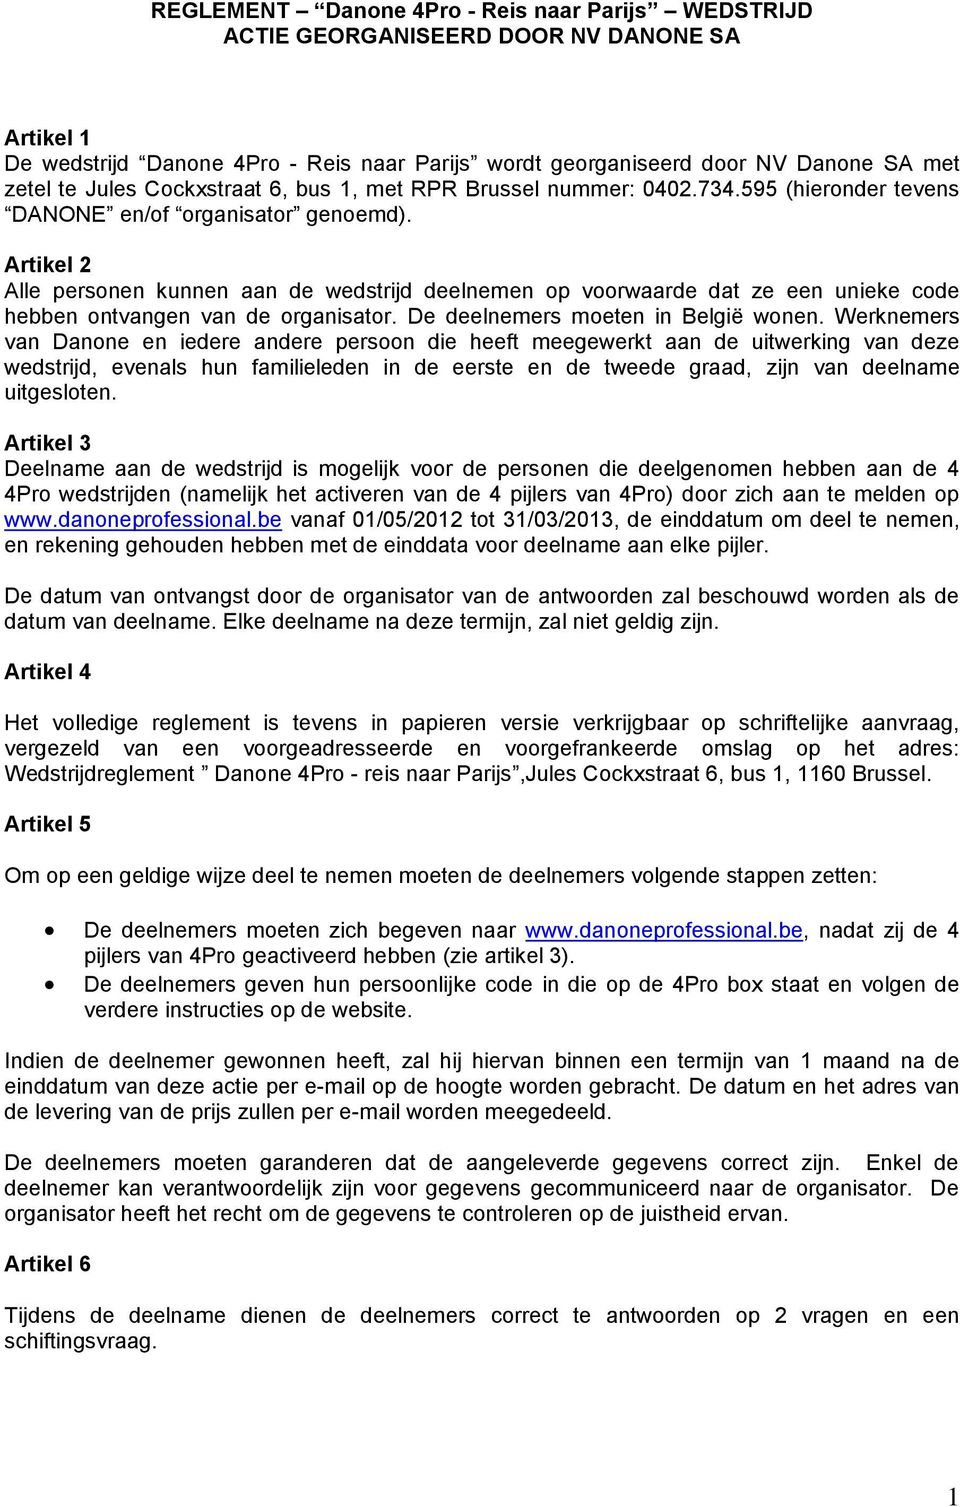 Artikel 2 Alle personen kunnen aan de wedstrijd deelnemen op voorwaarde dat ze een unieke code hebben ontvangen van de organisator. De deelnemers moeten in België wonen.